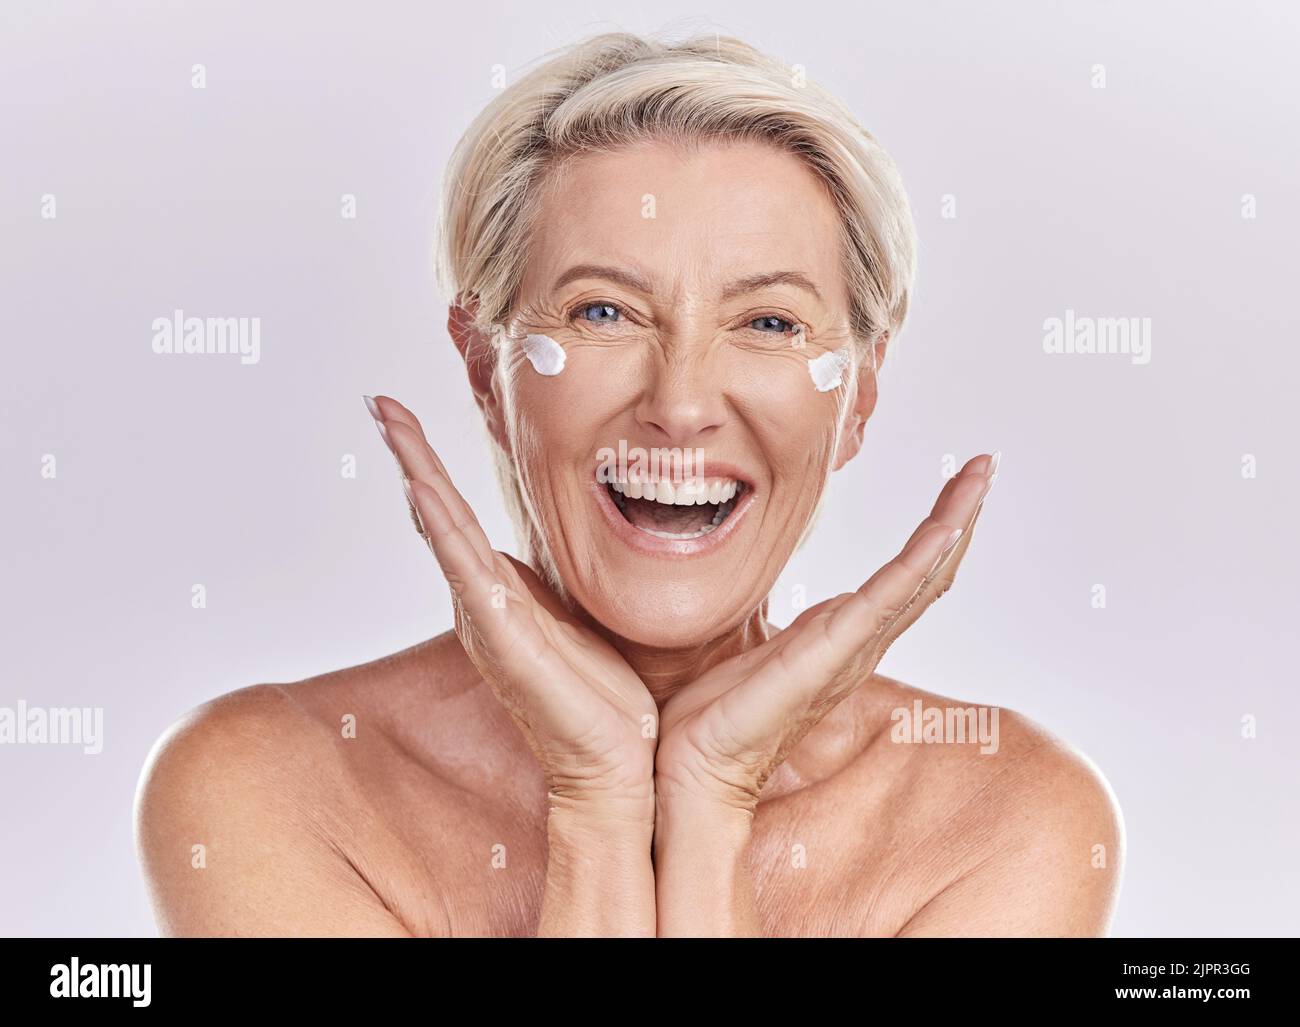 Hautpflege, glückliche und ältere Frau mit einem Lächeln in Gesundheit, Schönheit und Gesicht in einem Studio Hintergrund. Porträt eines reifen weiblichen Modells in gesunder Wellness Stockfoto